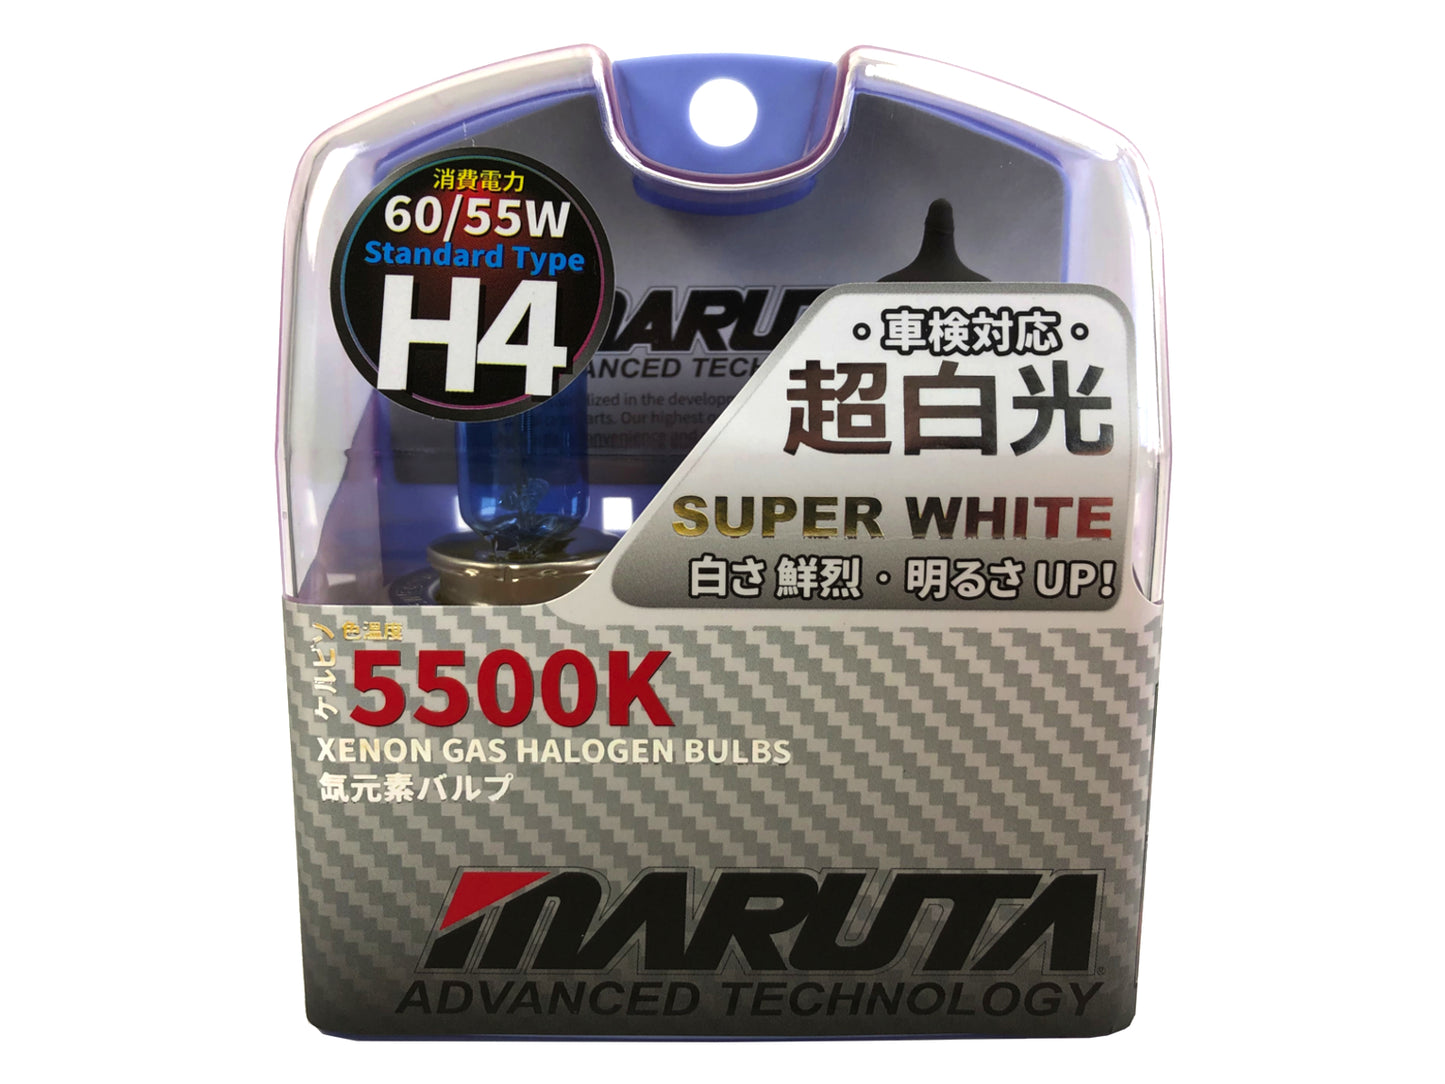 MARUTA SUPER WHITE H4 12V 60/55W Halogenlampe für Scheinwerfer, Abblendlicht & Fernlicht, 5500K Xenon-Effekt, langlebige Xenon-Gas Birne mit hochwertigem Quarzglas & Straßenzulassung (ECE Prüfzeichen) - Bild 1